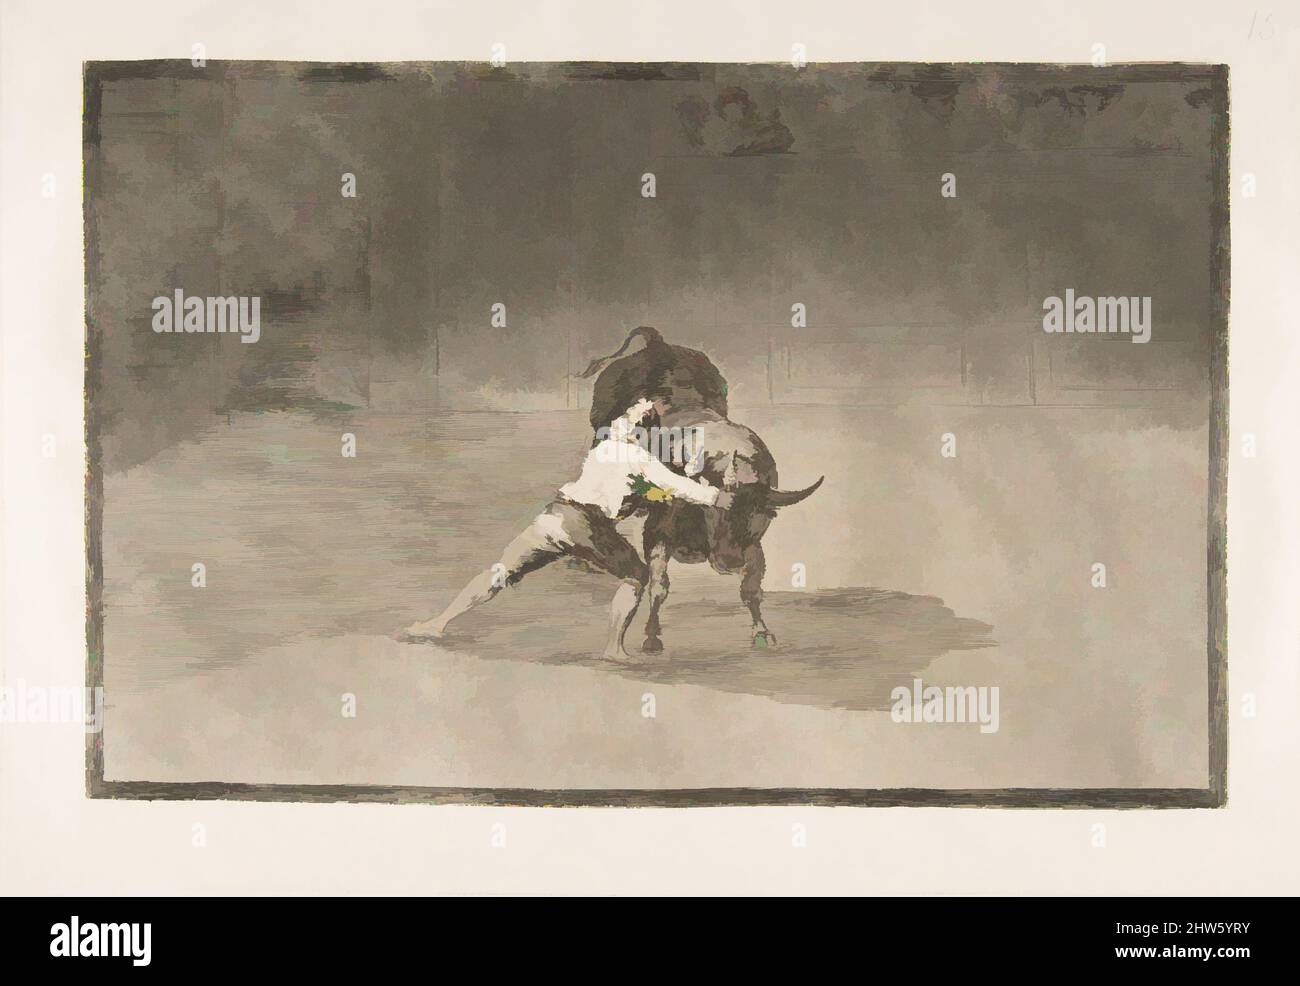 Art inspiré par la planche 15 de la 'Tauromaquia': Le célèbre Martincho place les banderillas jouant le taureau avec le mouvement de son corps., 1816, Etching, burnished aquatint, drypoint et burin, Plaque : 9 3/4 × 13 7/8 po (24,7 × 35,2 cm), Prints, Goya (Francisco de Goya y Lucientes, oeuvres classiques modernisées par Artotop avec une touche de modernité. Formes, couleur et valeur, impact visuel accrocheur sur l'art émotions par la liberté d'œuvres d'art d'une manière contemporaine. Un message intemporel qui cherche une nouvelle direction créative. Artistes qui se tournent vers le support numérique et créent le NFT Artotop Banque D'Images